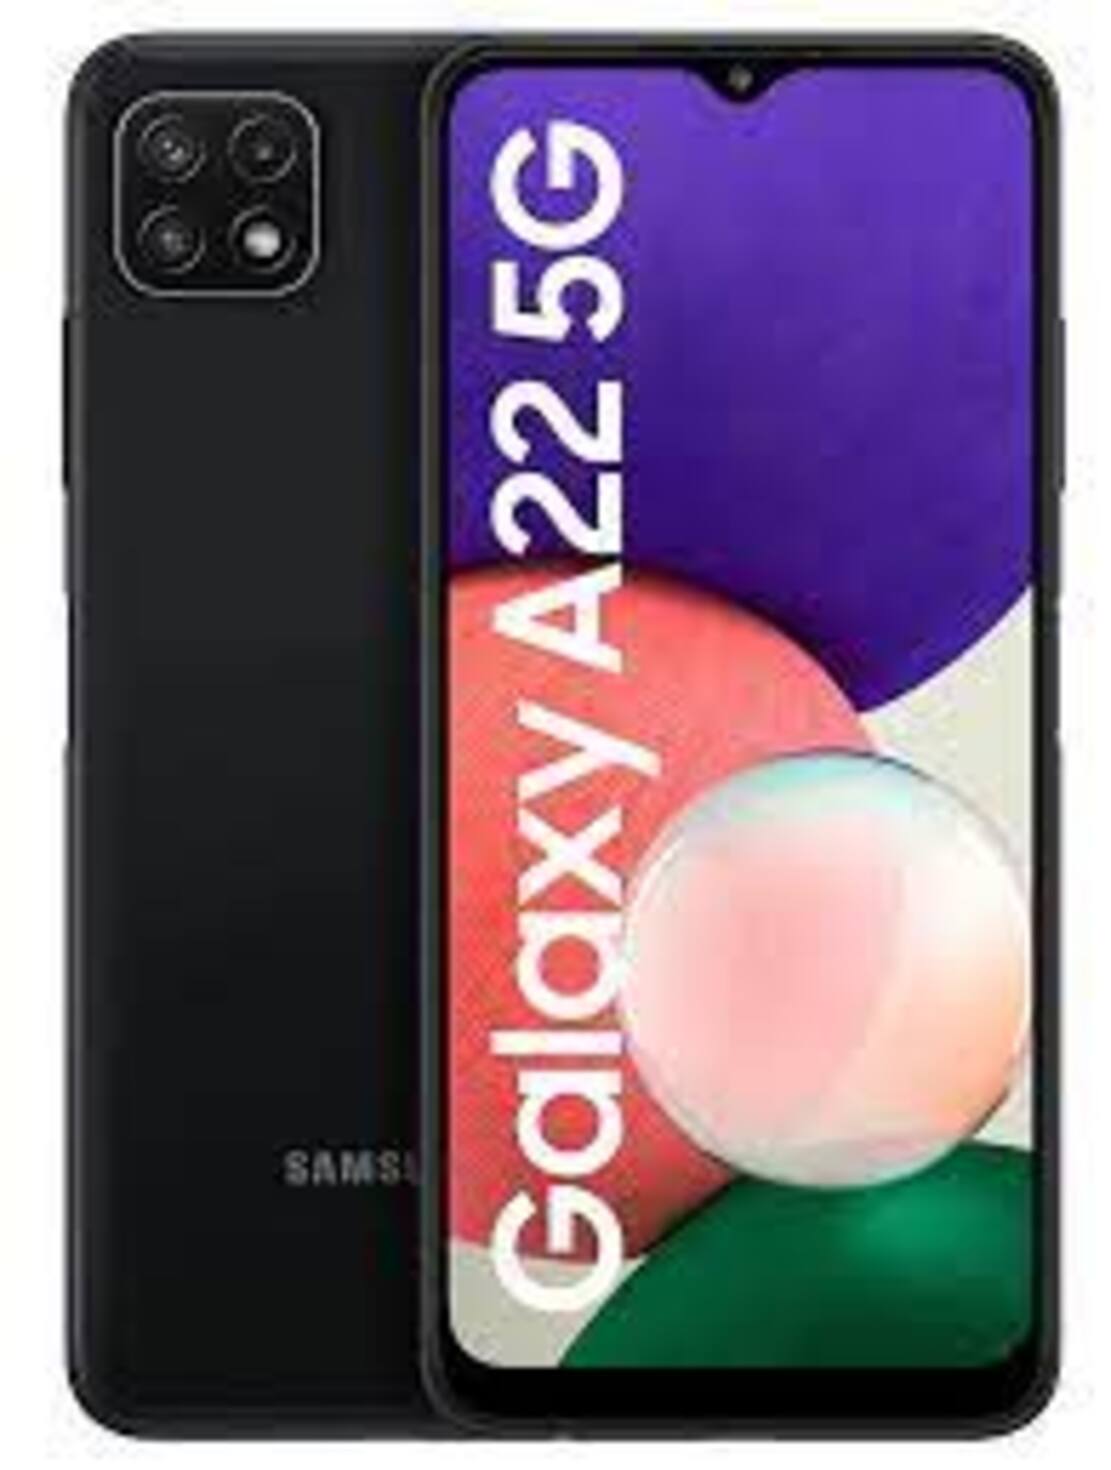 [ SALE SẬP SÀN ] điện thoại giá siêu rẻ máy Chính Hãng Samsung Galaxy A22 5G ram 4G/64G, Màn...